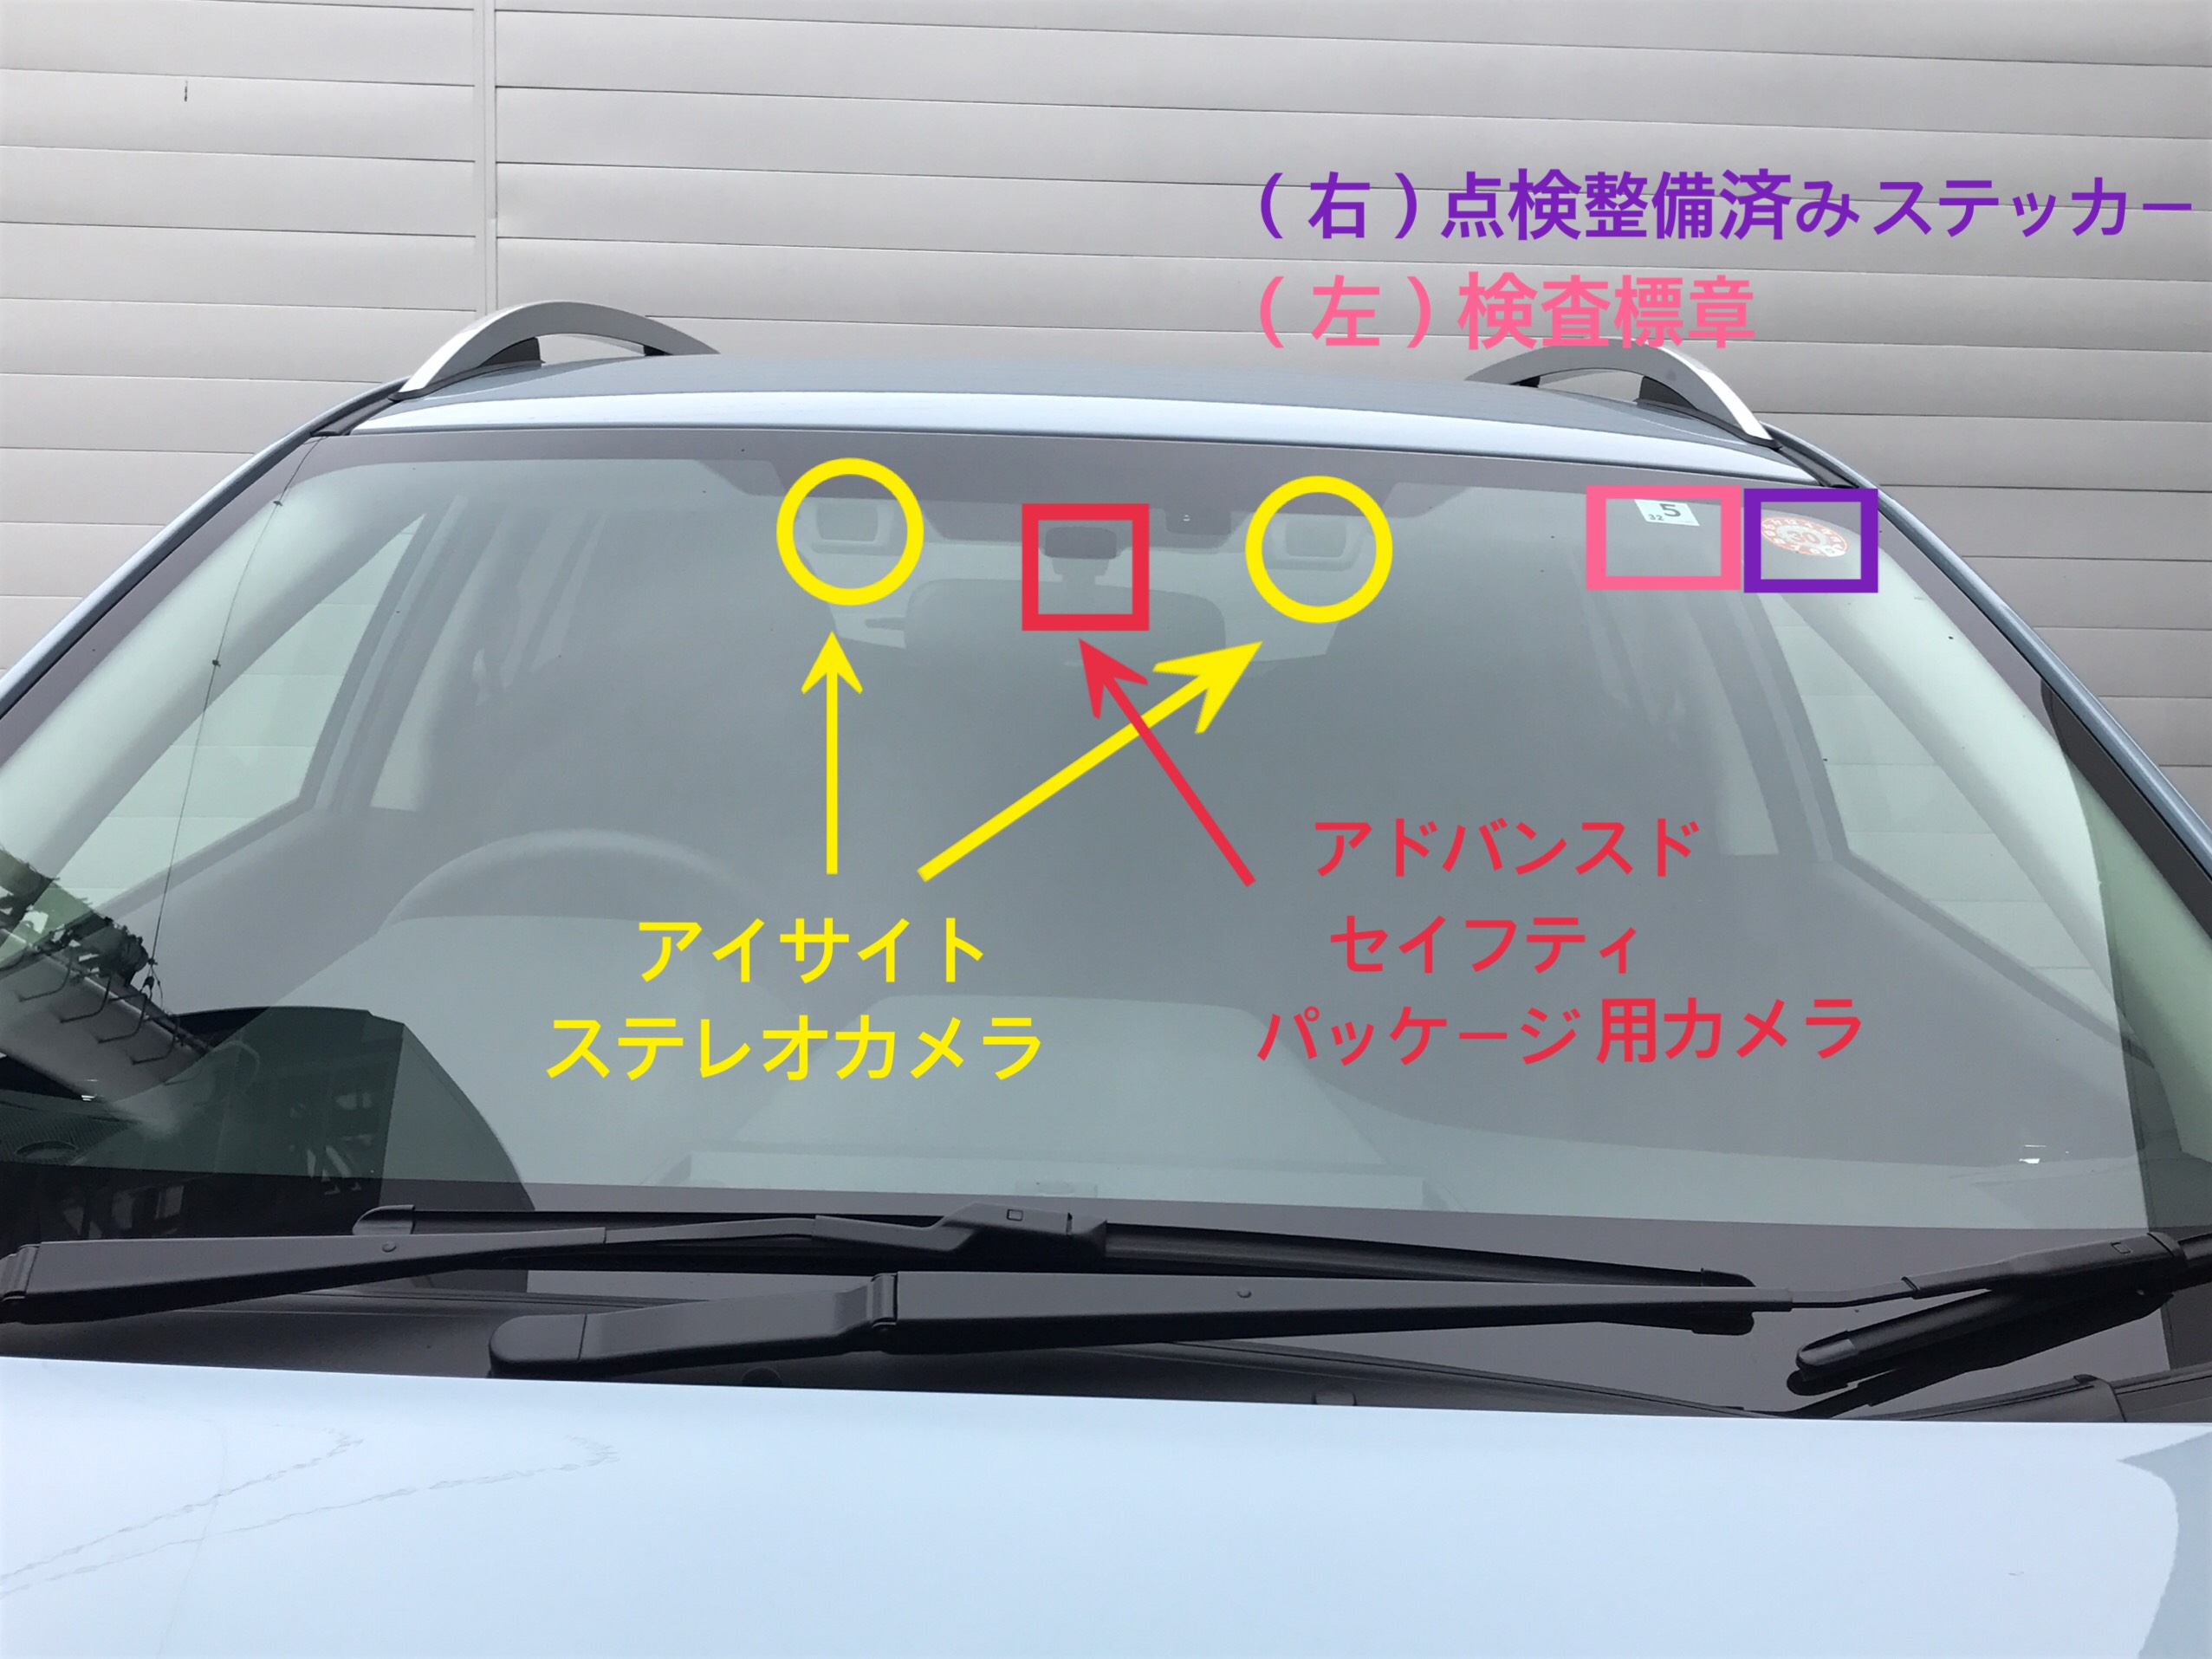 車検 シール 貼り 方 車検証シールの貼り方と位置